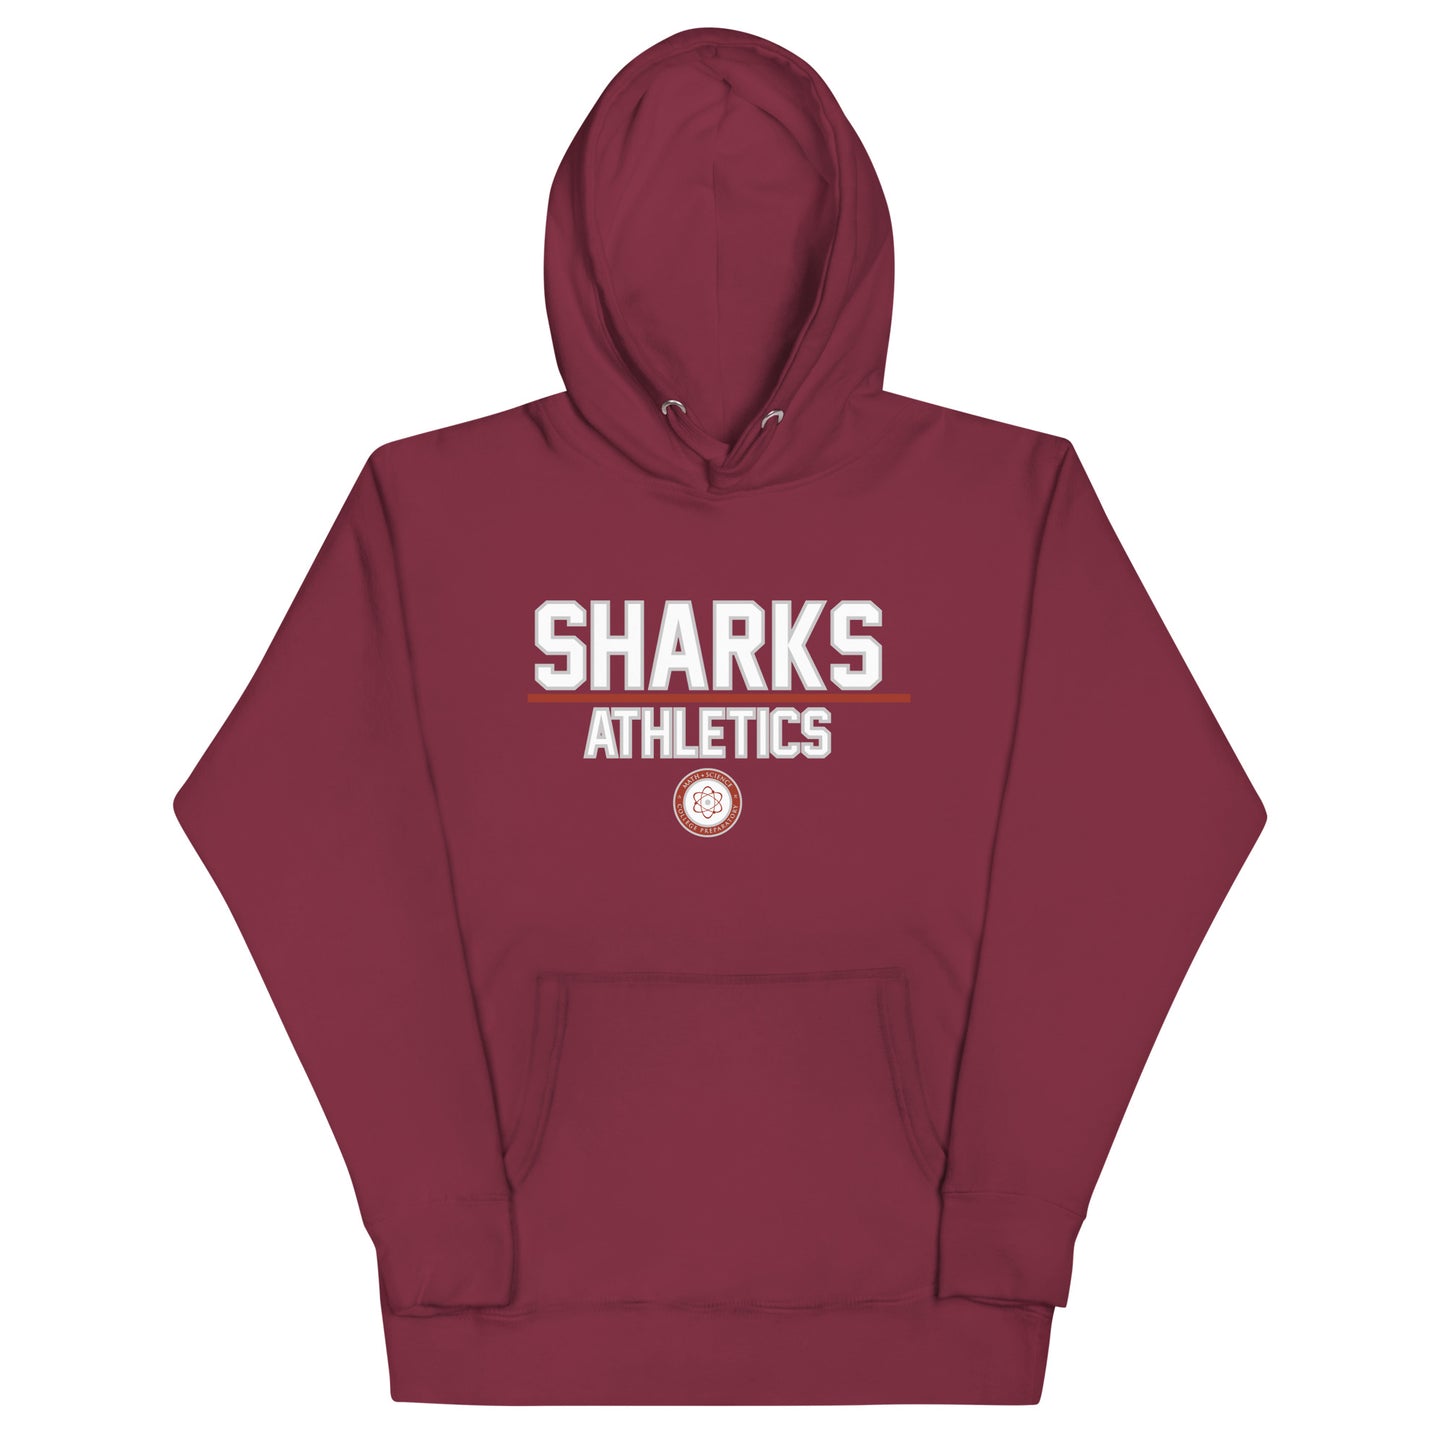 Sharks Athletics Unisex Hoodie